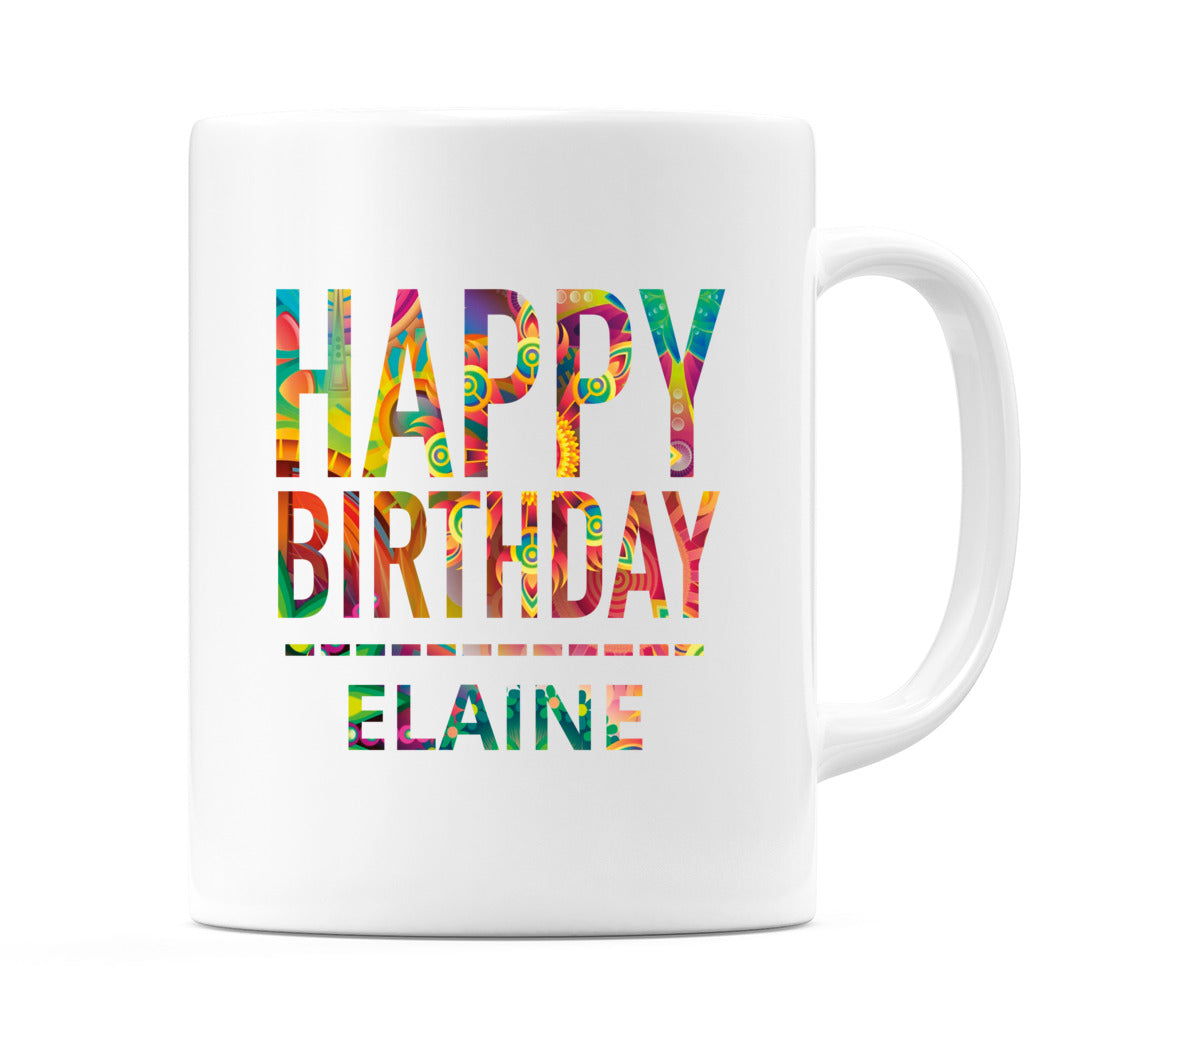 Happy Birthday Elaine (Tie Dye Effect) Mug Cup by WeDoMugs